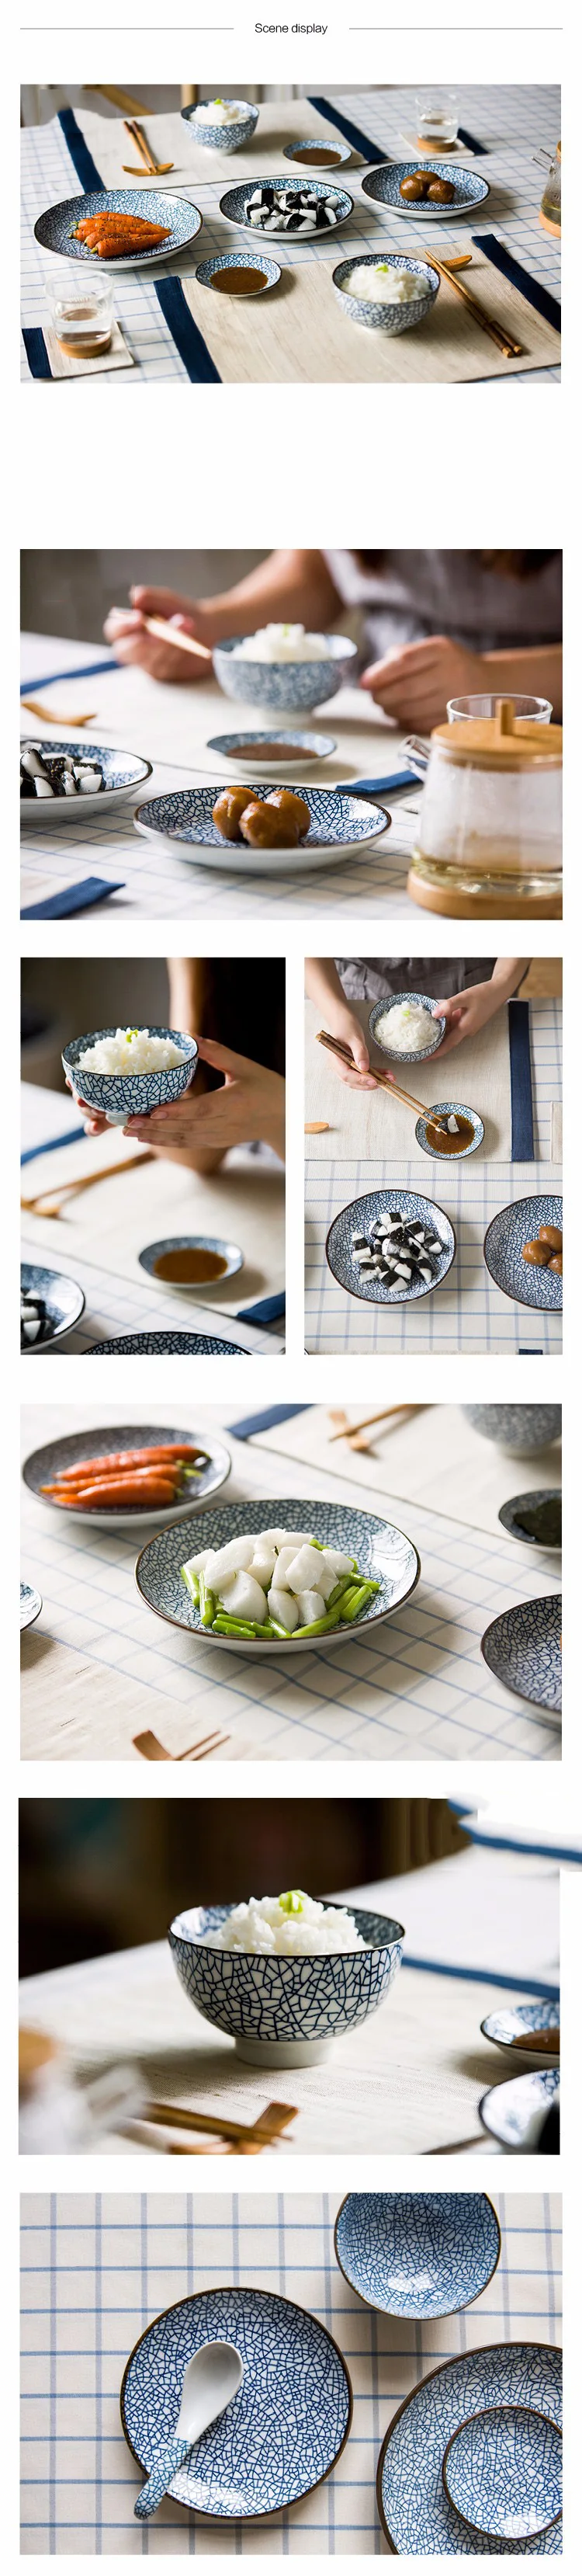 ANTOWALL керамическая японская посуда набор диск соус блюдо фрукты десертная тарелка Классический Фарфор суши тарелка миска для рисового супа ложка